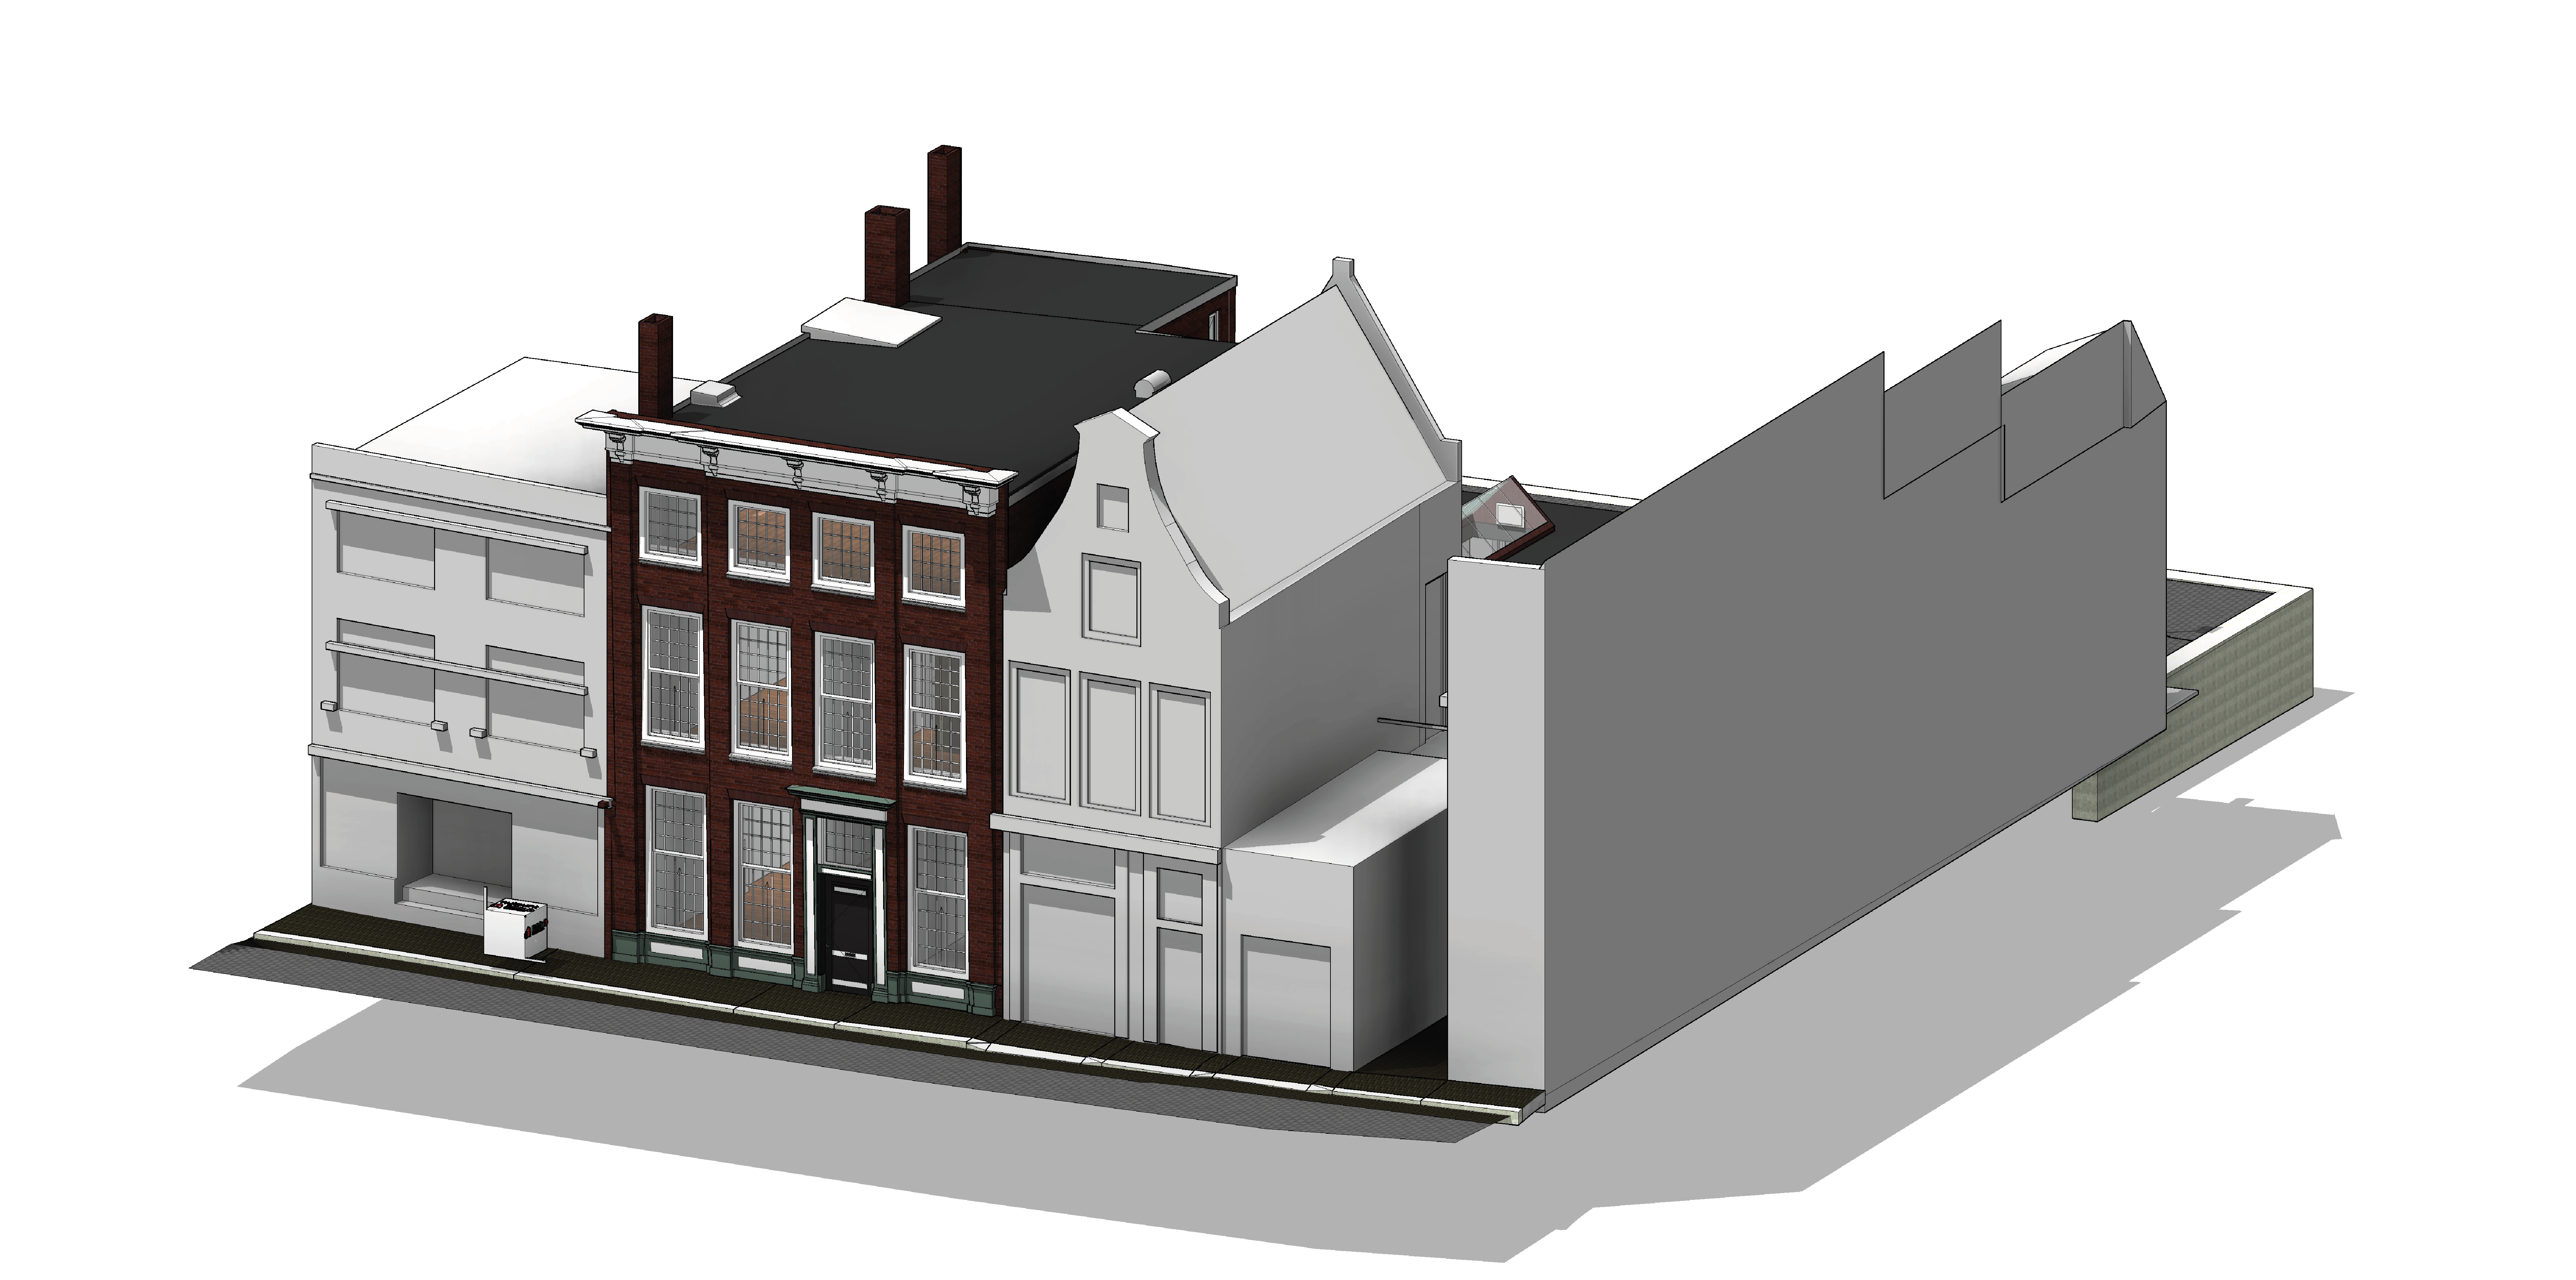 3D Revit model existing state of monumental building in Dordrecht